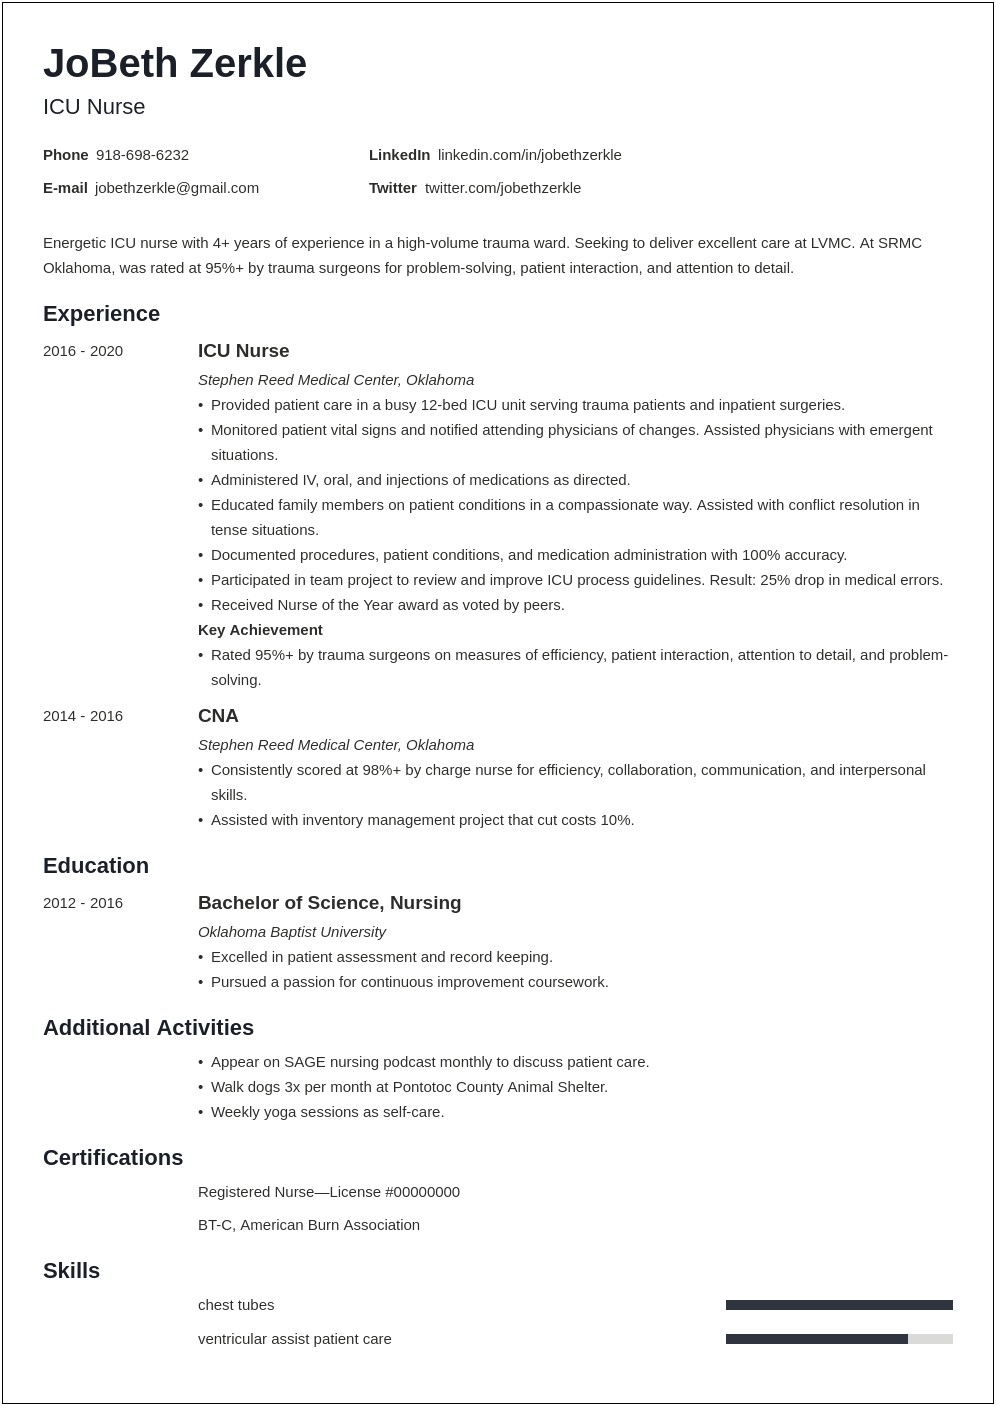 Charge Nurse Job Description For Resume